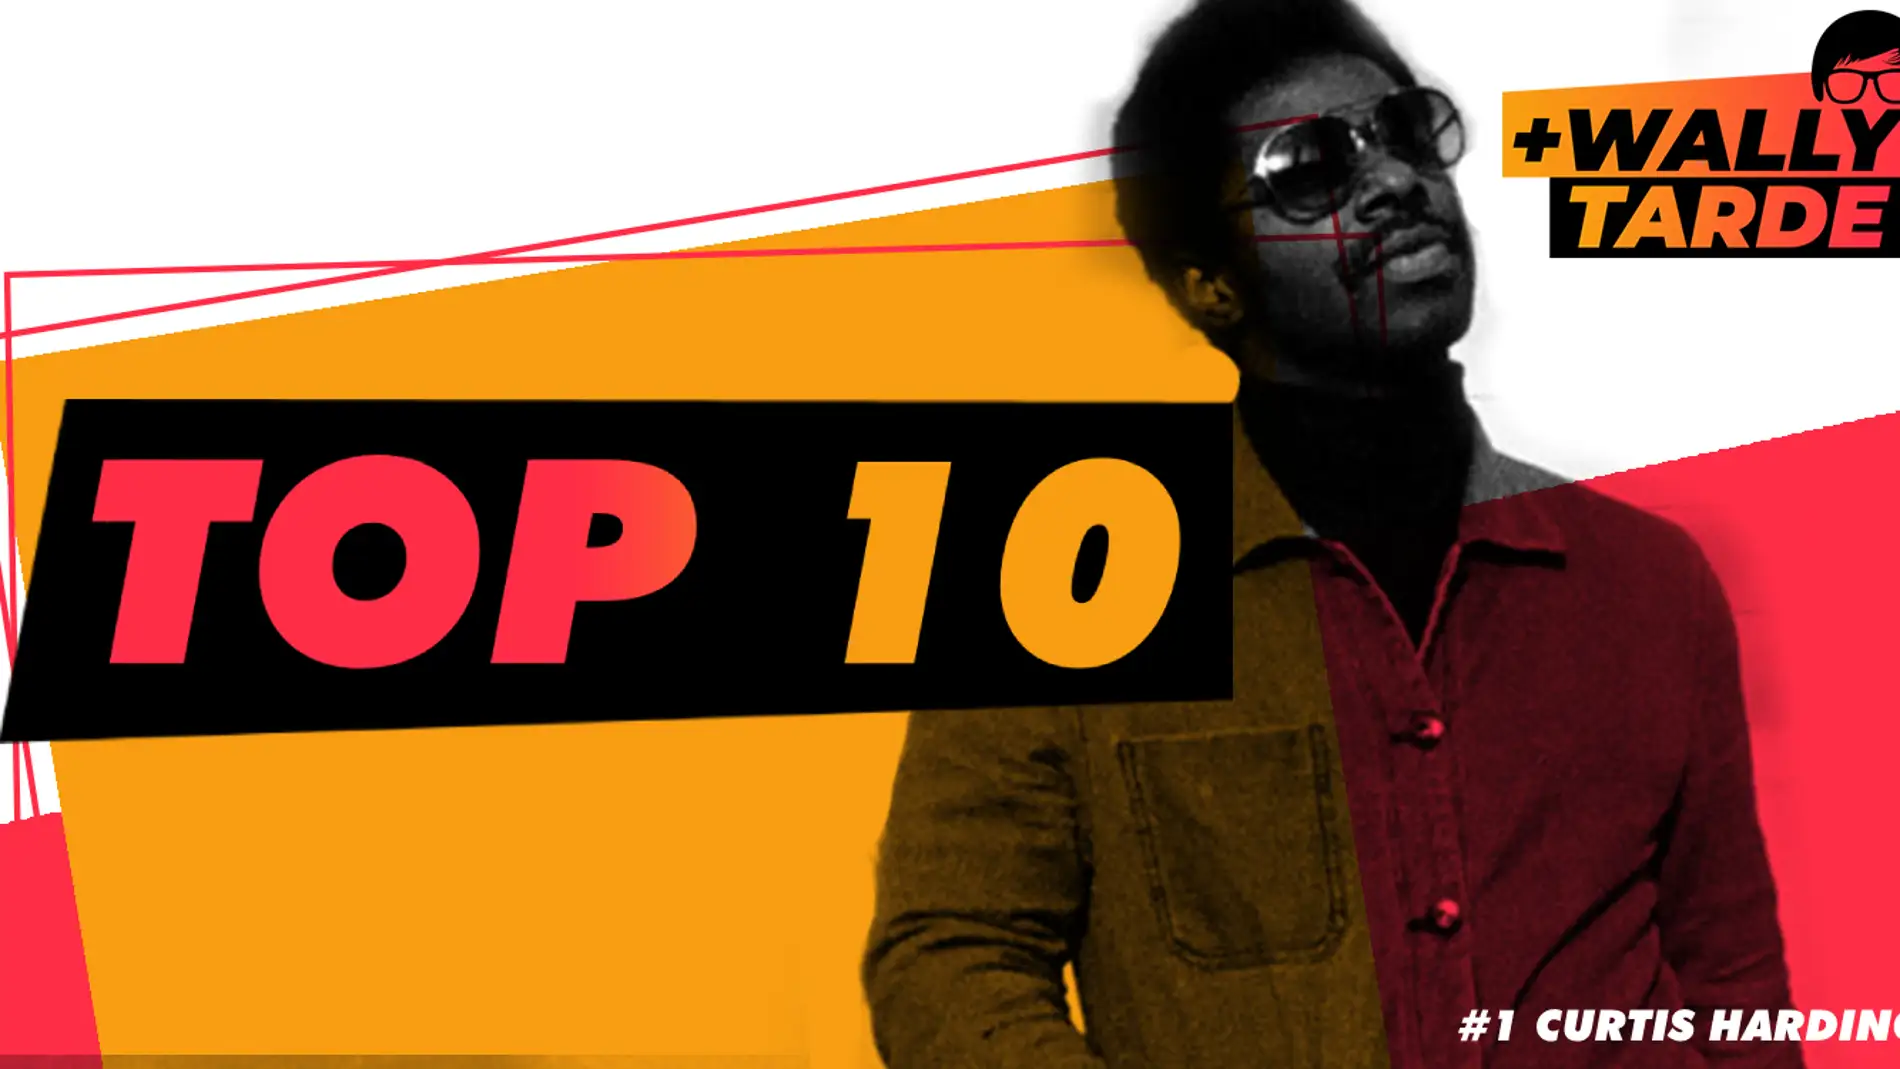 El Top 10 de Más Wally Tarde: lo hacemos semanal